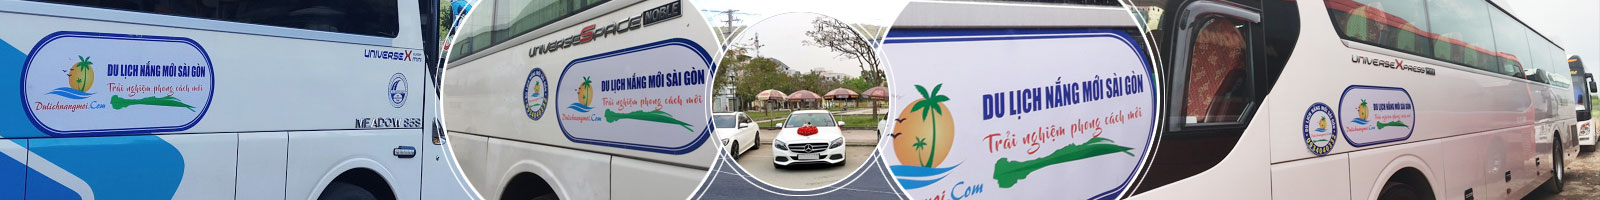 Thuê xe 16 chỗ tại Đà Nẵng giá rẻ - Xe đẹp chất lượng